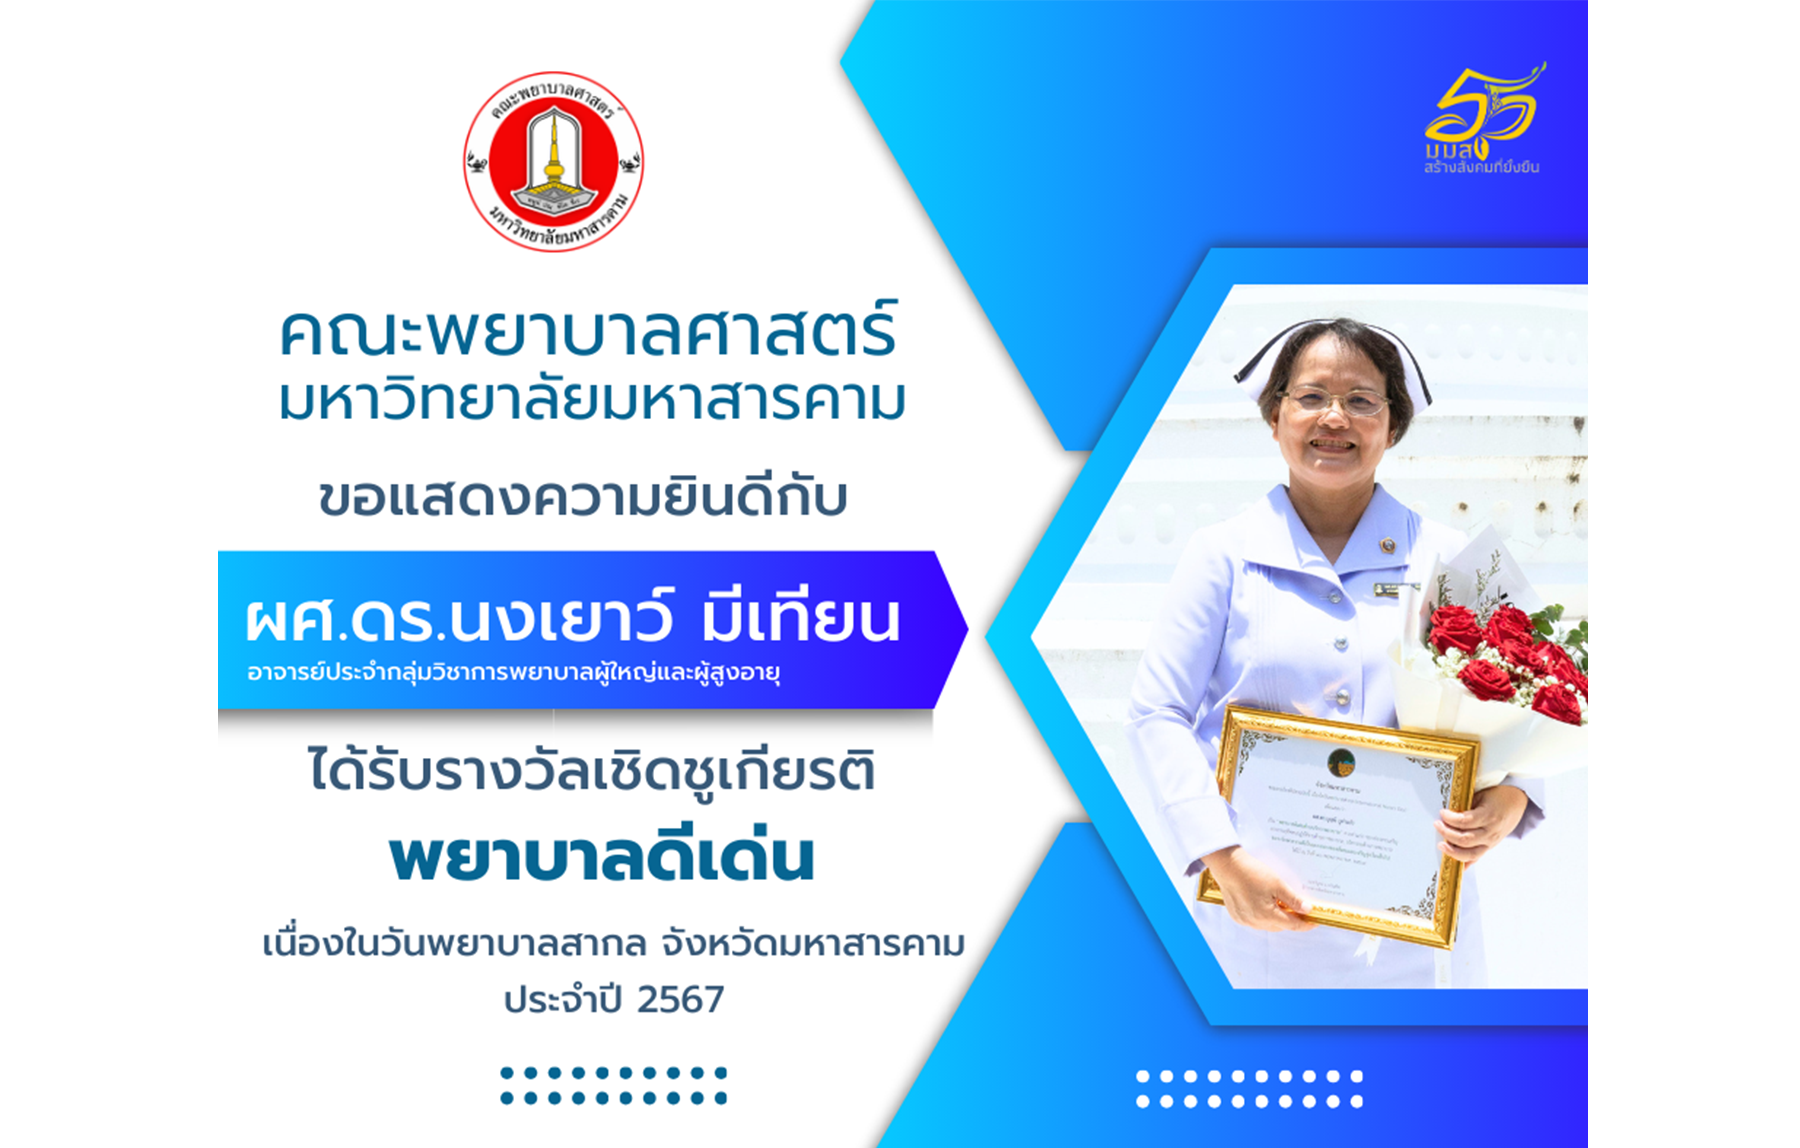 ขอแสดงความยินดี กับ ผศ.ดร.นงเยาว์ มีเทียน ได้รับรางวัลเชิดชูเกียรต พยาบาลดีเด่น เนื่องในวันพยาบาลสากล จังหวัดมหาสารคาม ประจำปี 2567